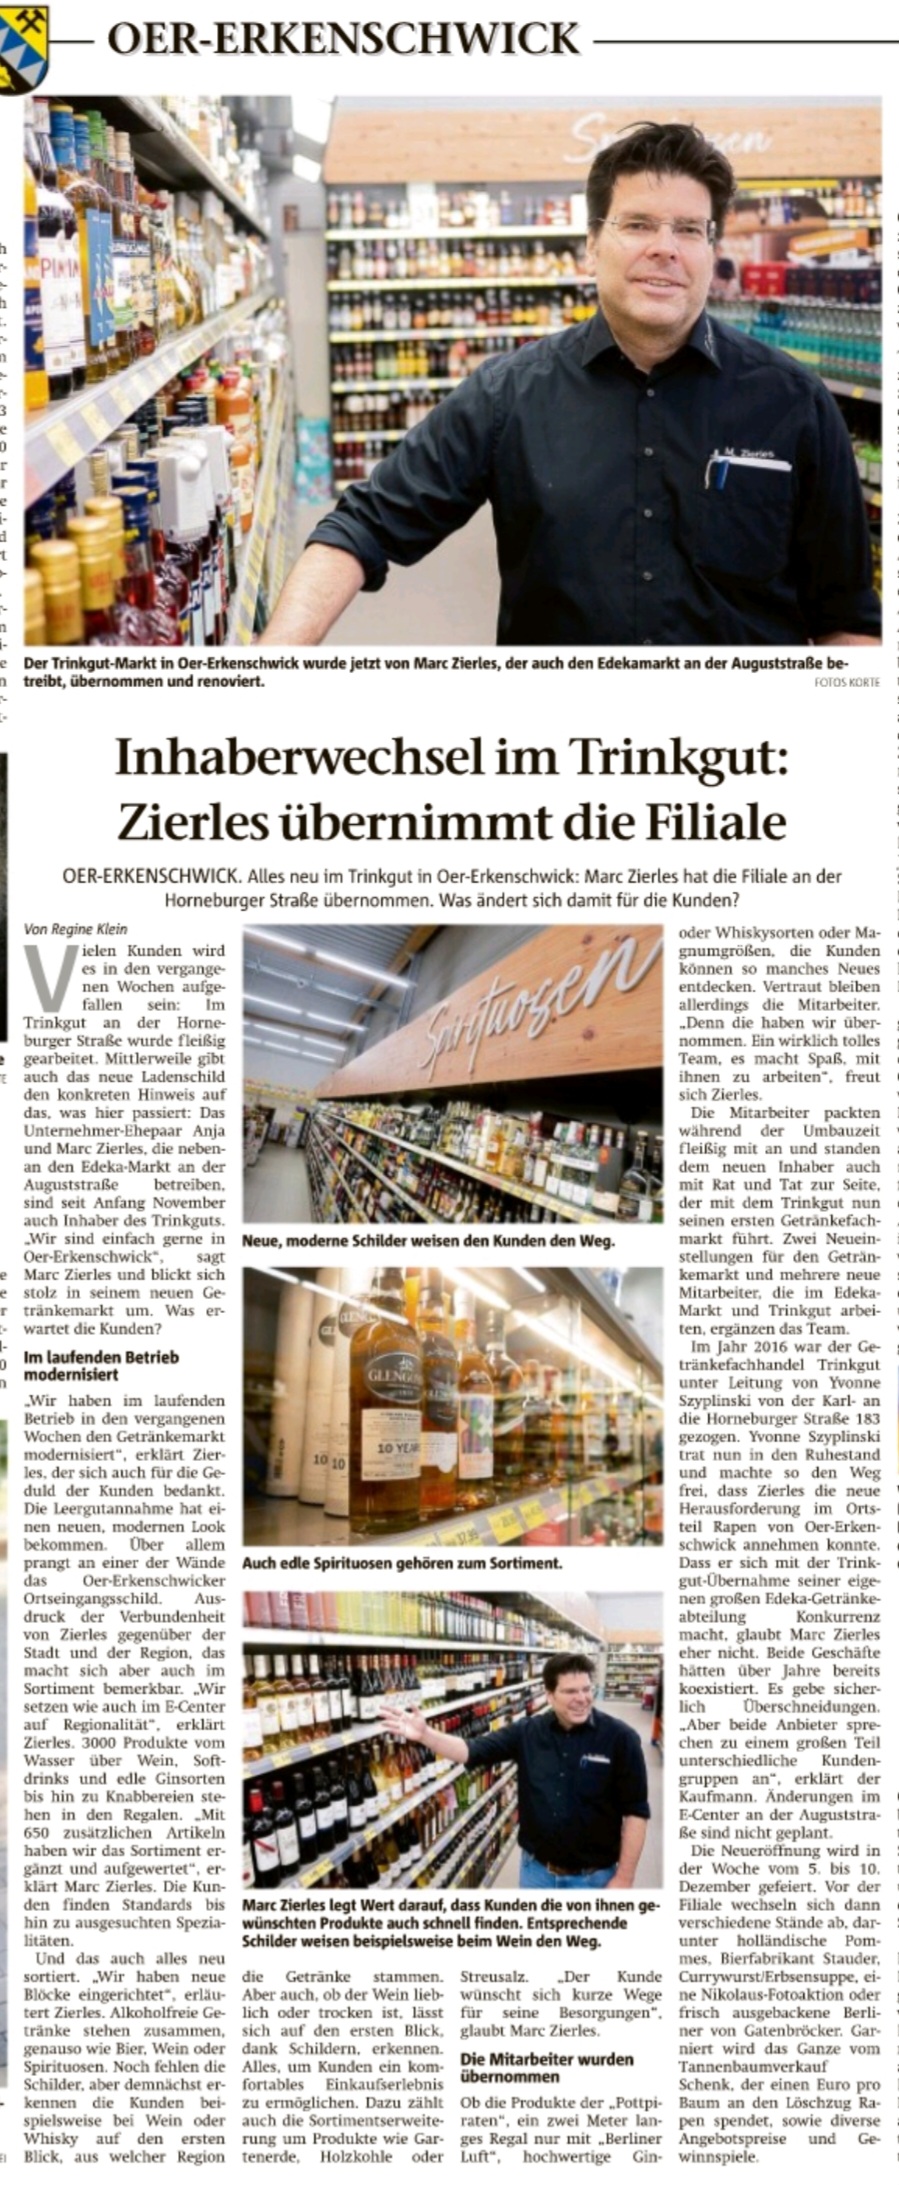 Artikel aus der Stimberg Zeitung vom 02.12.2022 über trinkgut Zierles